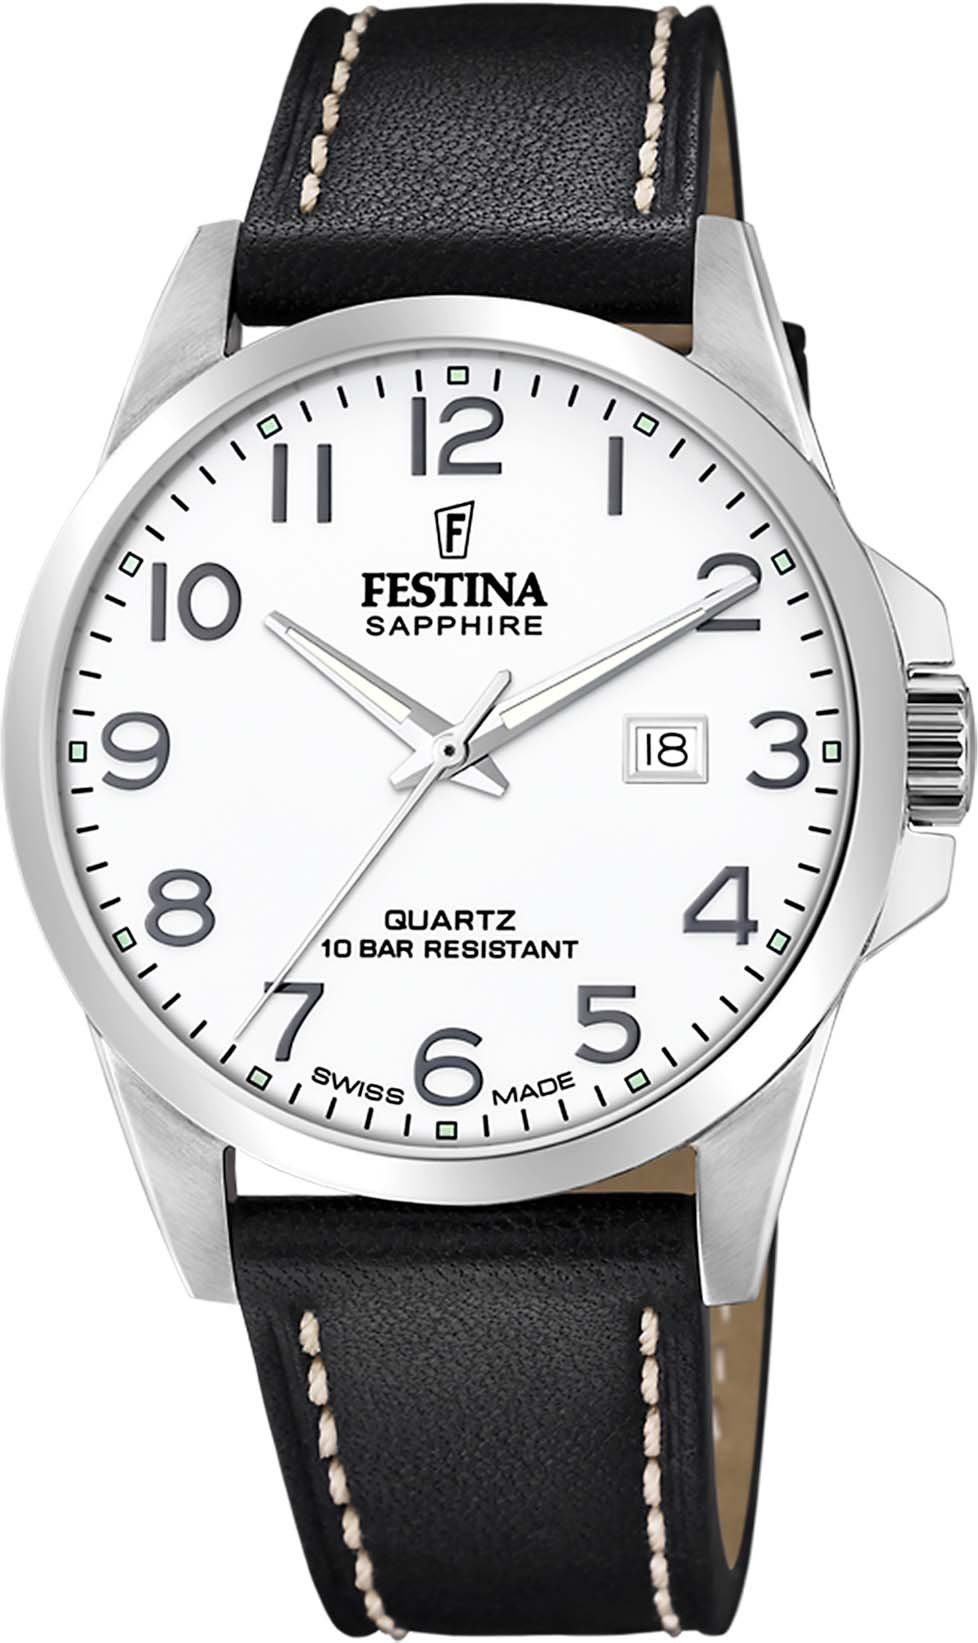 Swiss Uhr Schweizer F20025/1 Festina Made,